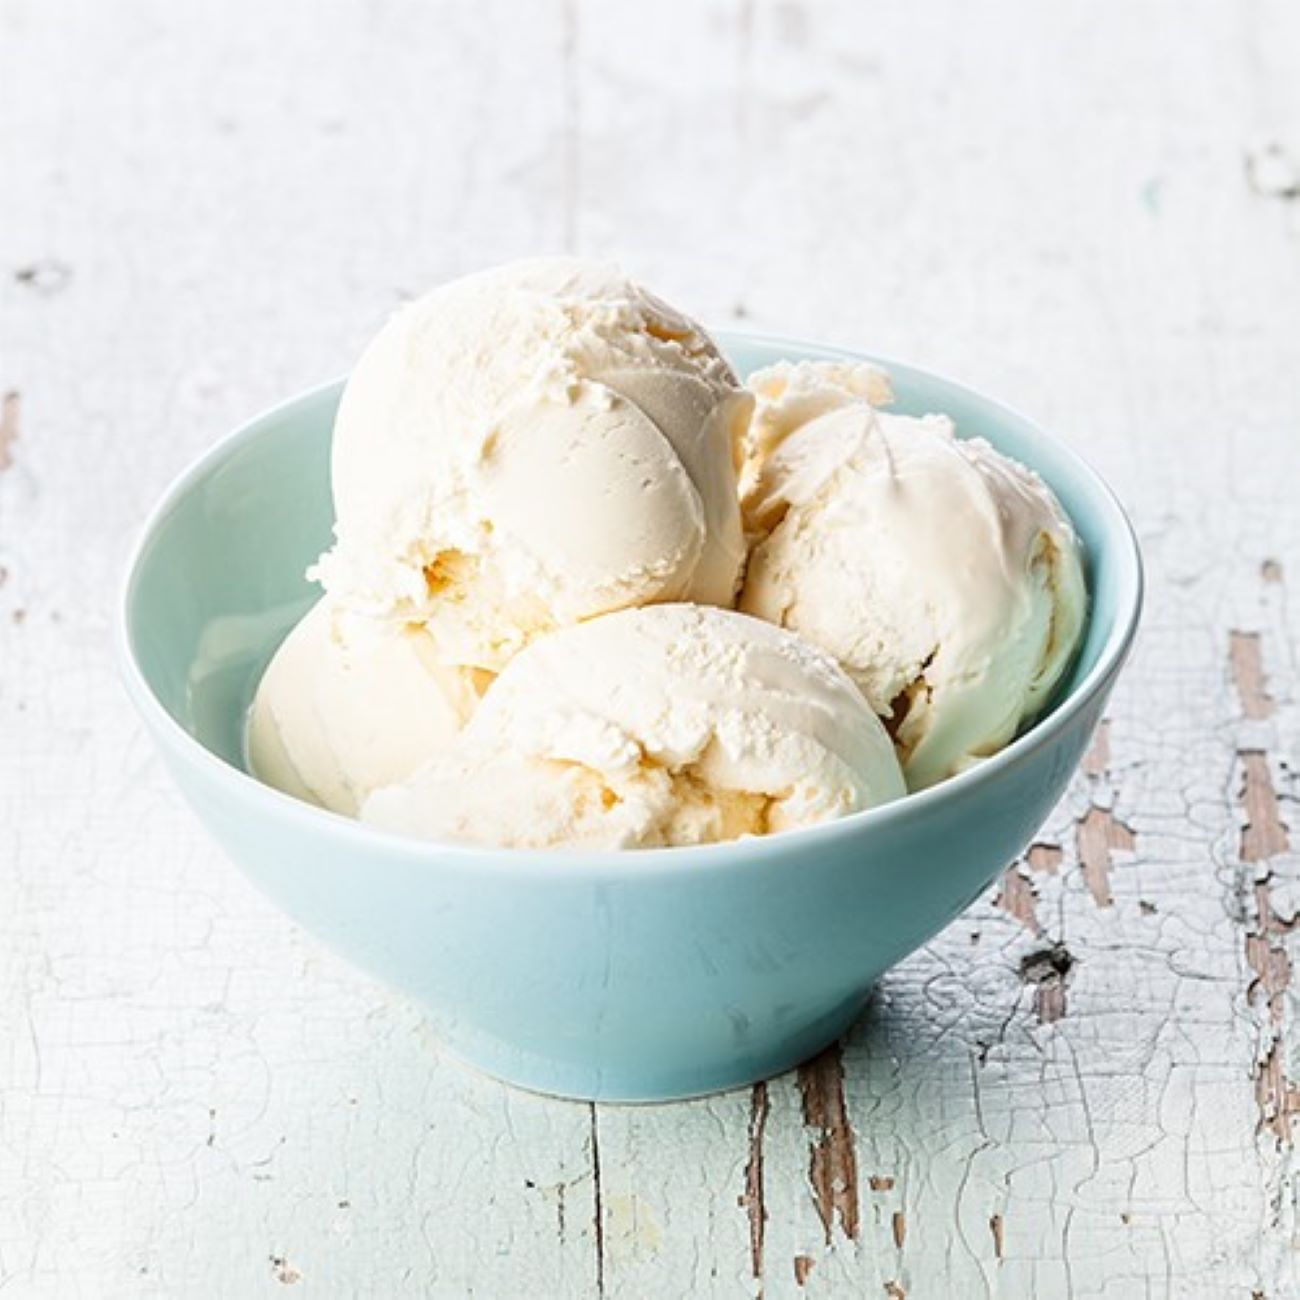 Špargľová zmrzlina podávaná v svetlomodrej miske.